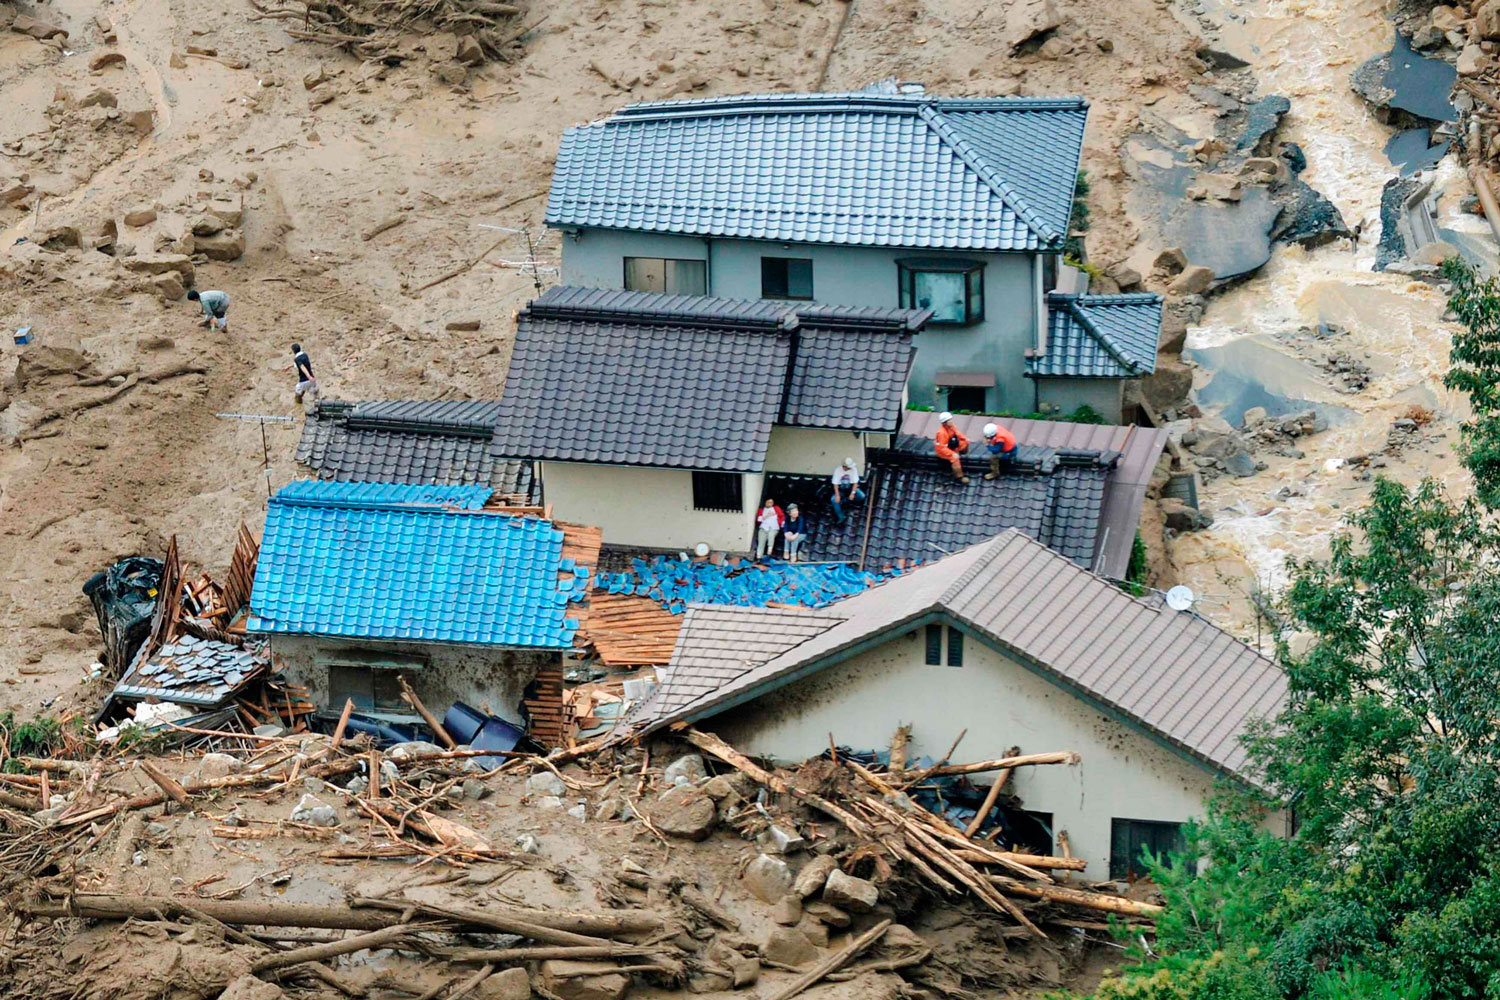 Lluvias torrenciales históricas causan 36 muertos en el oeste de Japón